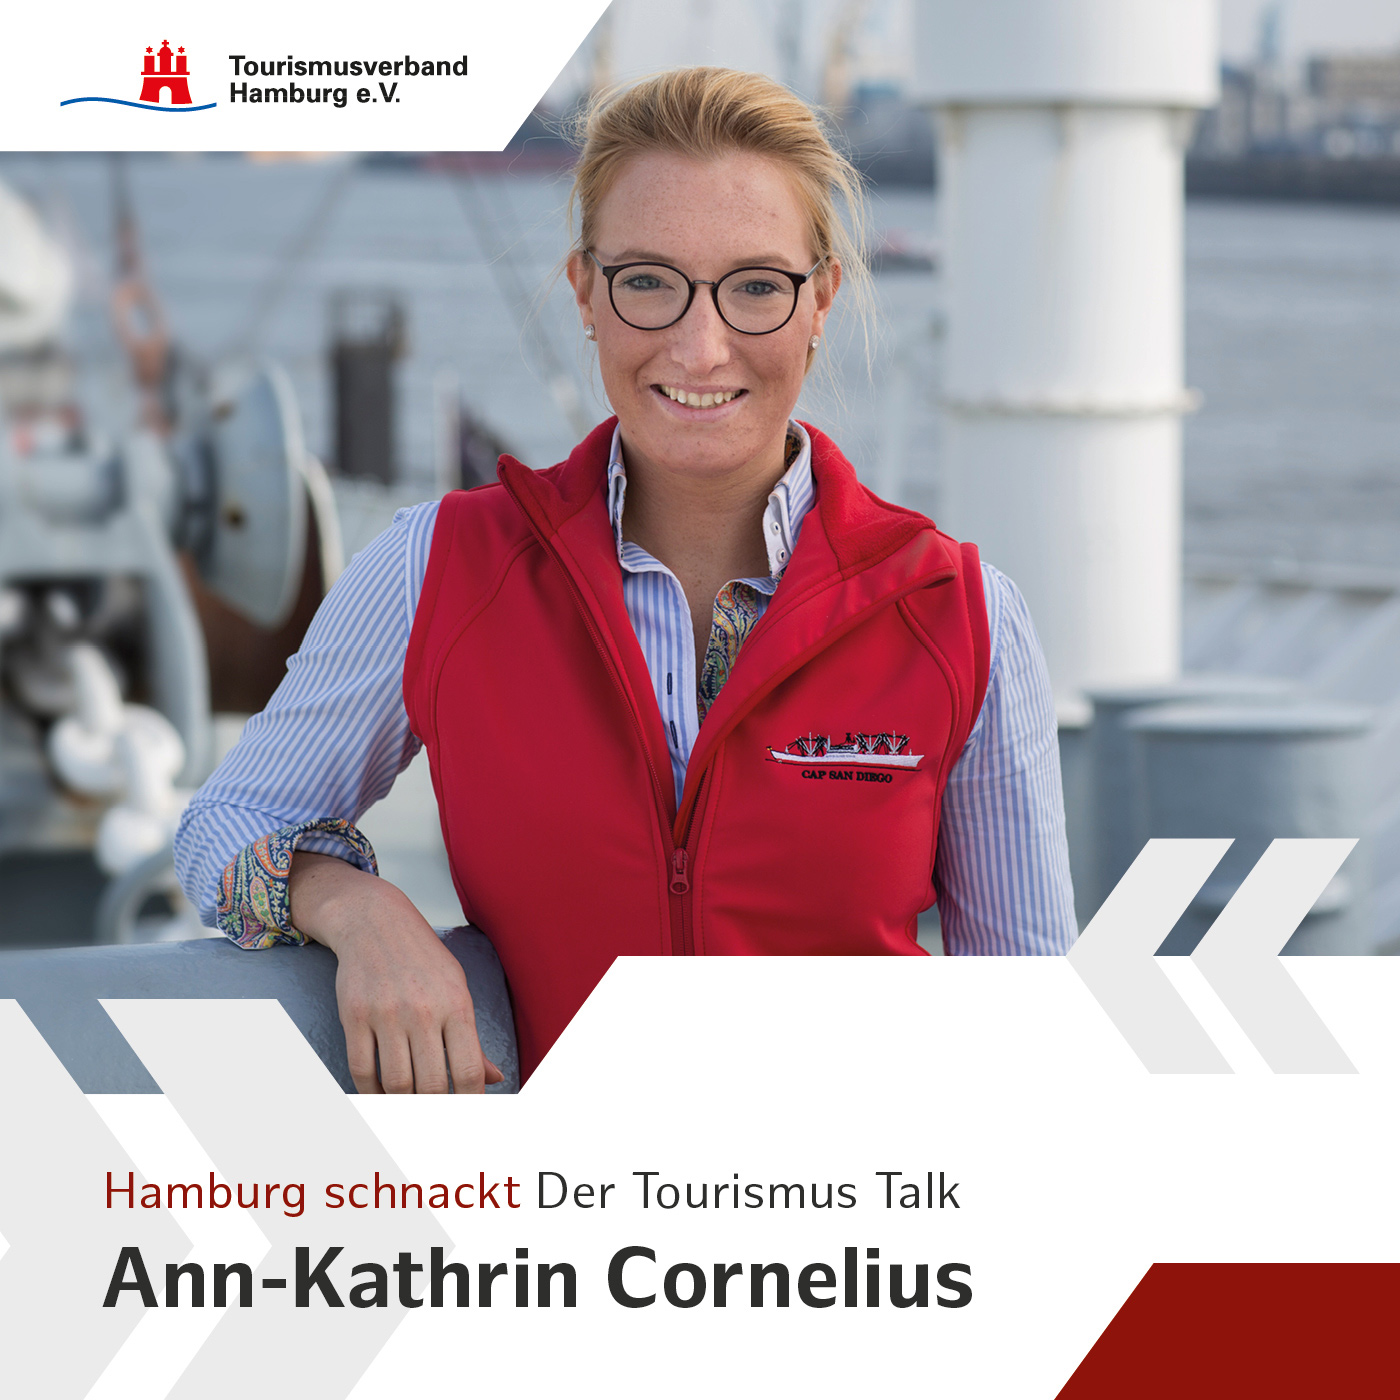 Hamburg schnackt mit Ann-Kathrin Cornelius